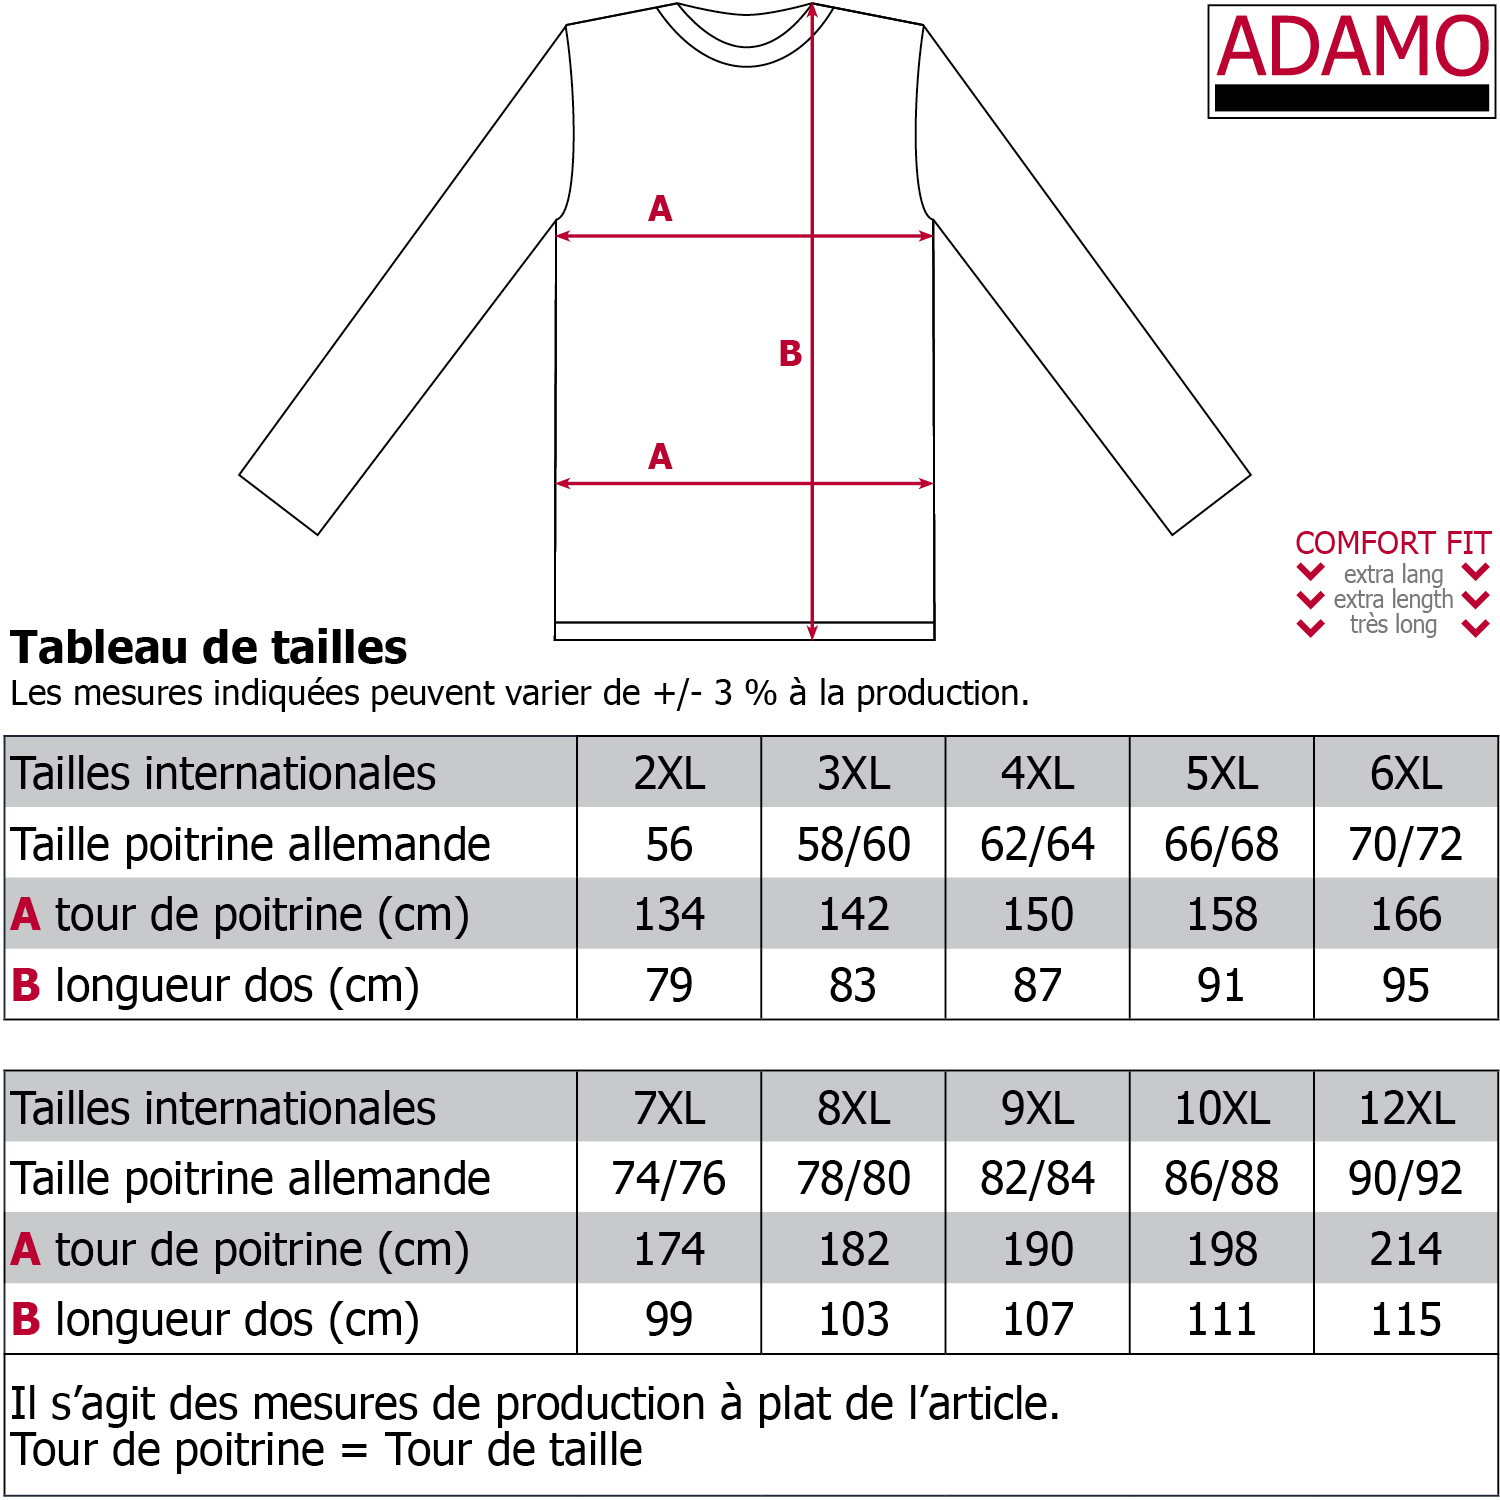 Herren Pique Poloshirt langarm COMFORT FIT Serie Peter von Adamo in großen Größen XXL bis 12XL